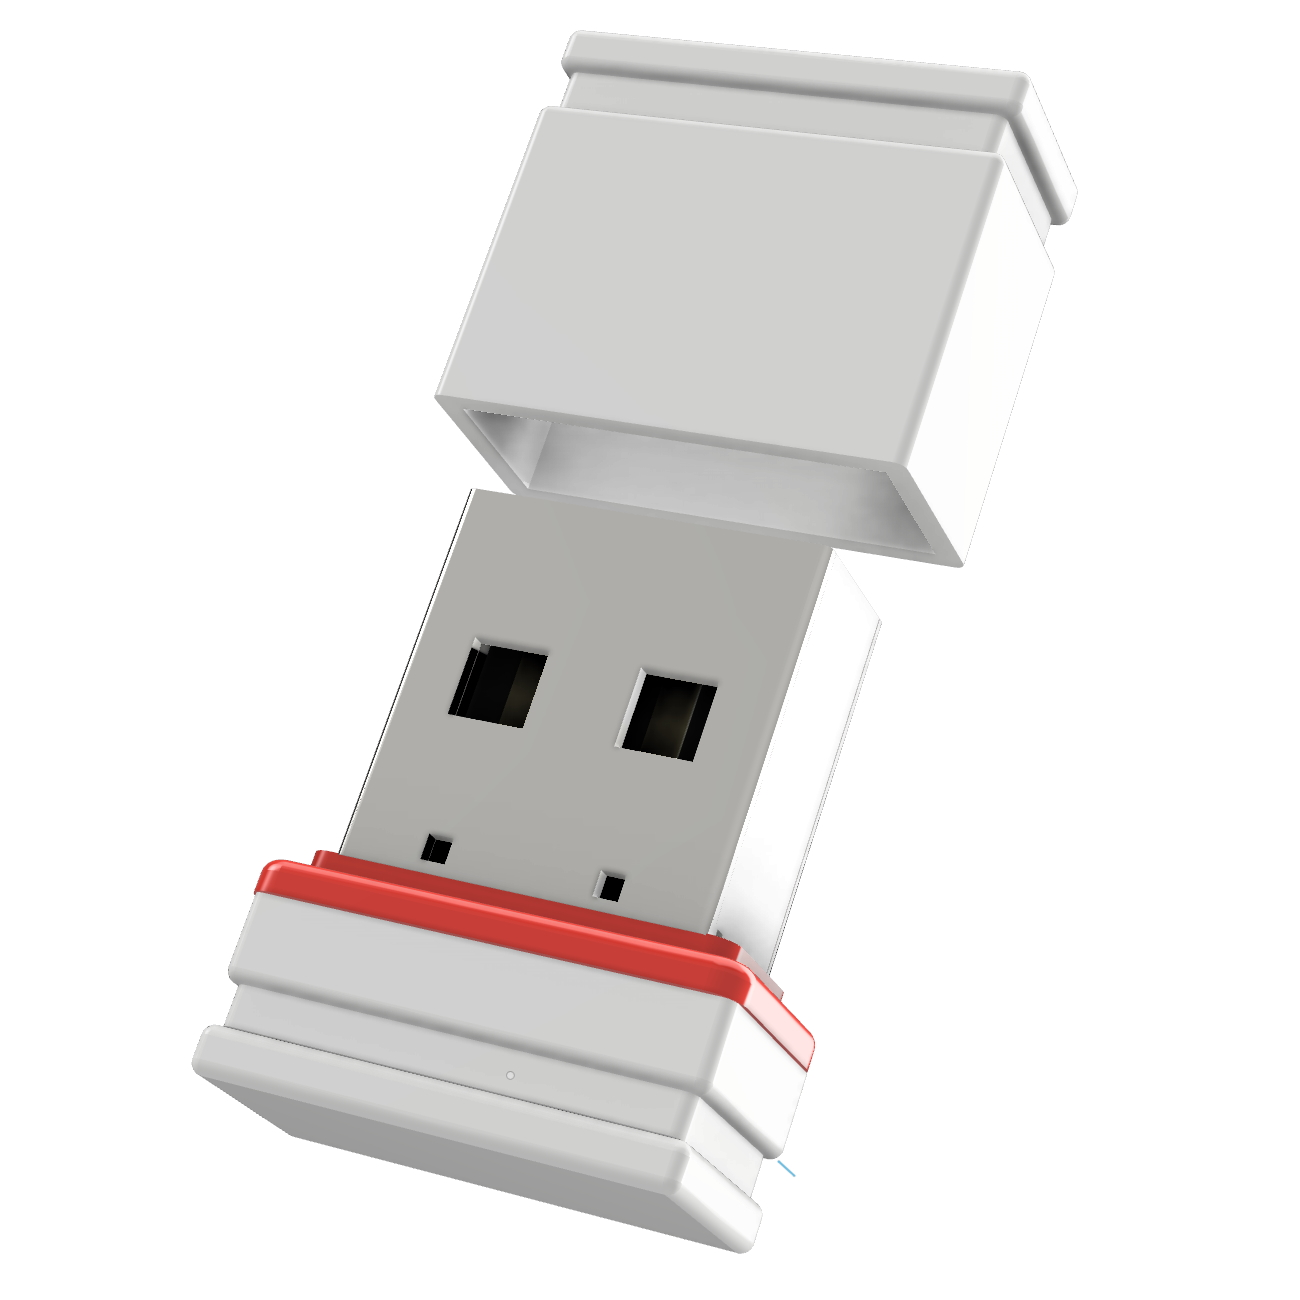 Mini GB) 2 ®ULTRA USB GERMANY USB-Stick (Weiss/Rot, P1